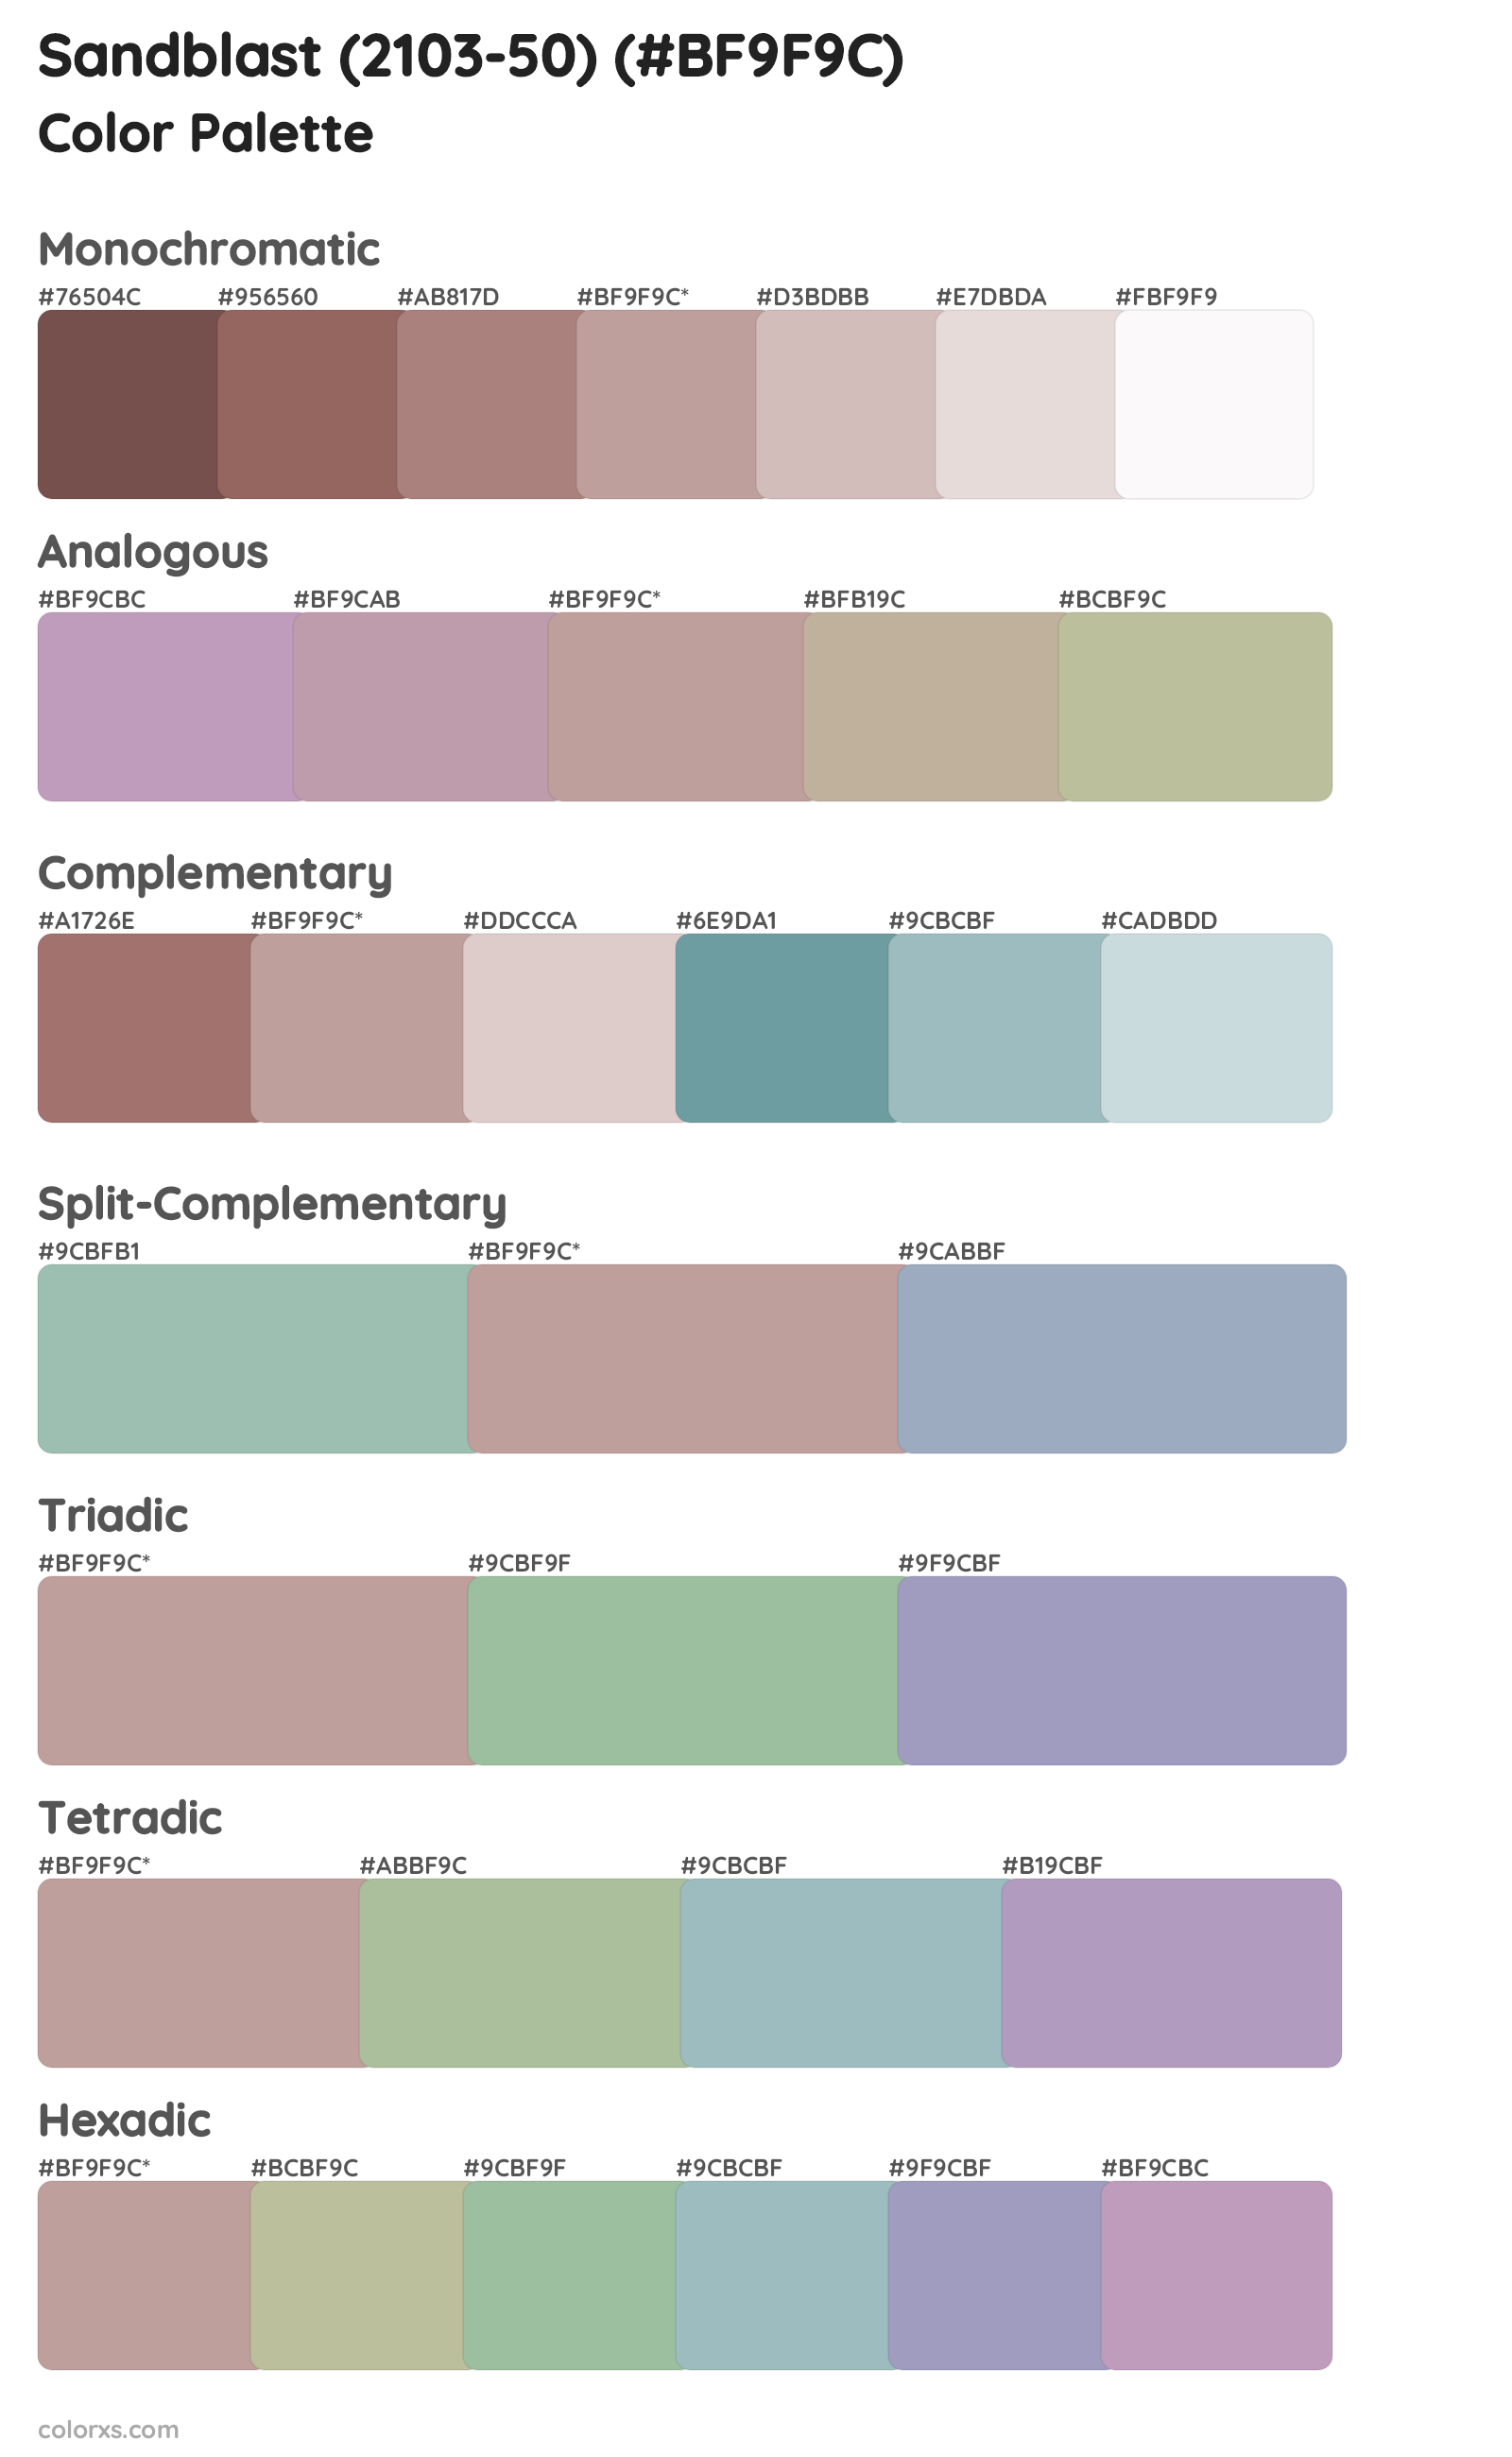 Sandblast (2103-50) Color Scheme Palettes